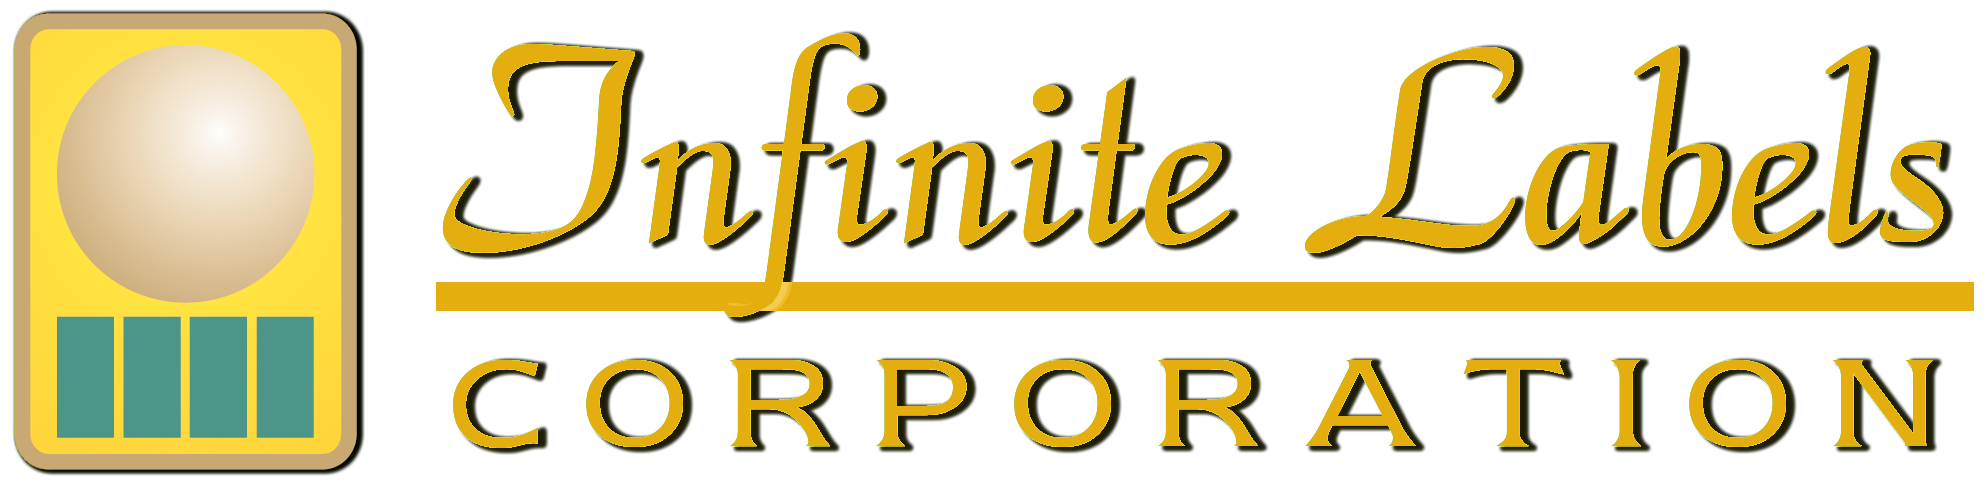 infinite-labels-logo1